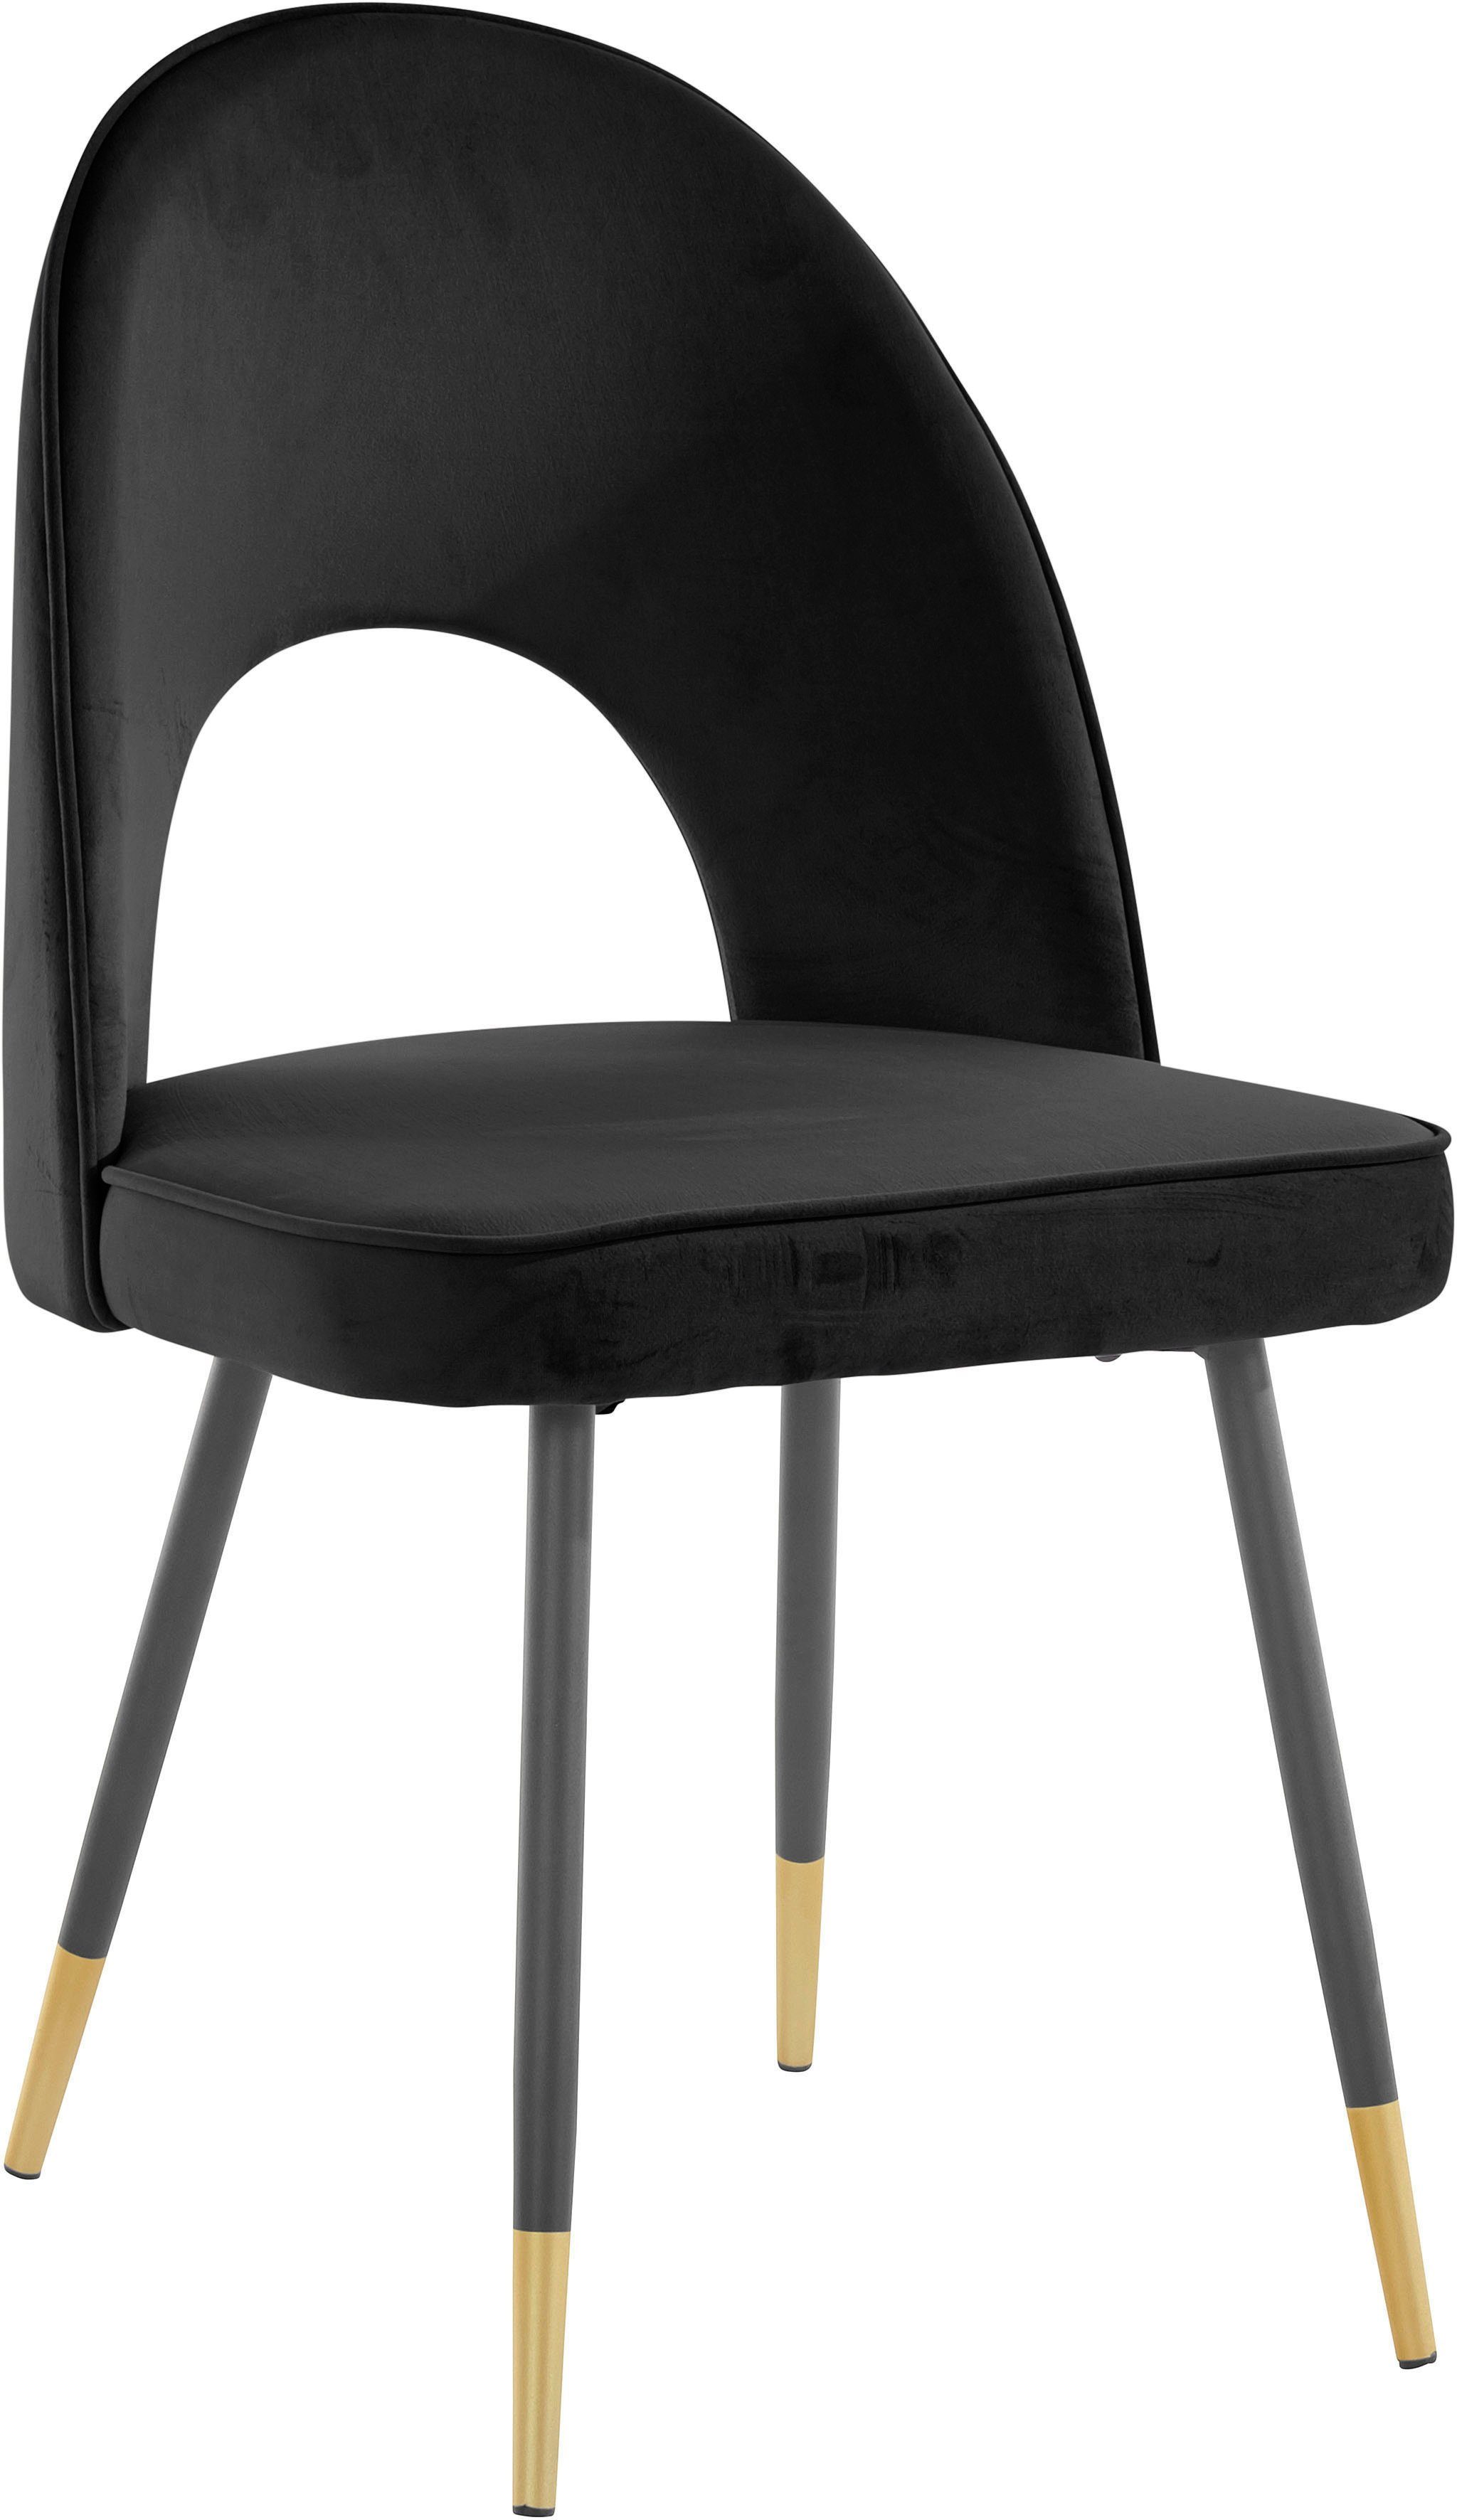 my home 4-Fußstuhl »Rosie« (2 Stück), Bezug in Veloursstoff, Metallgestell in schwarz mit abgesetzten goldfarbenen Füßen, maximale Belastbarkeit 120kg-kaufen